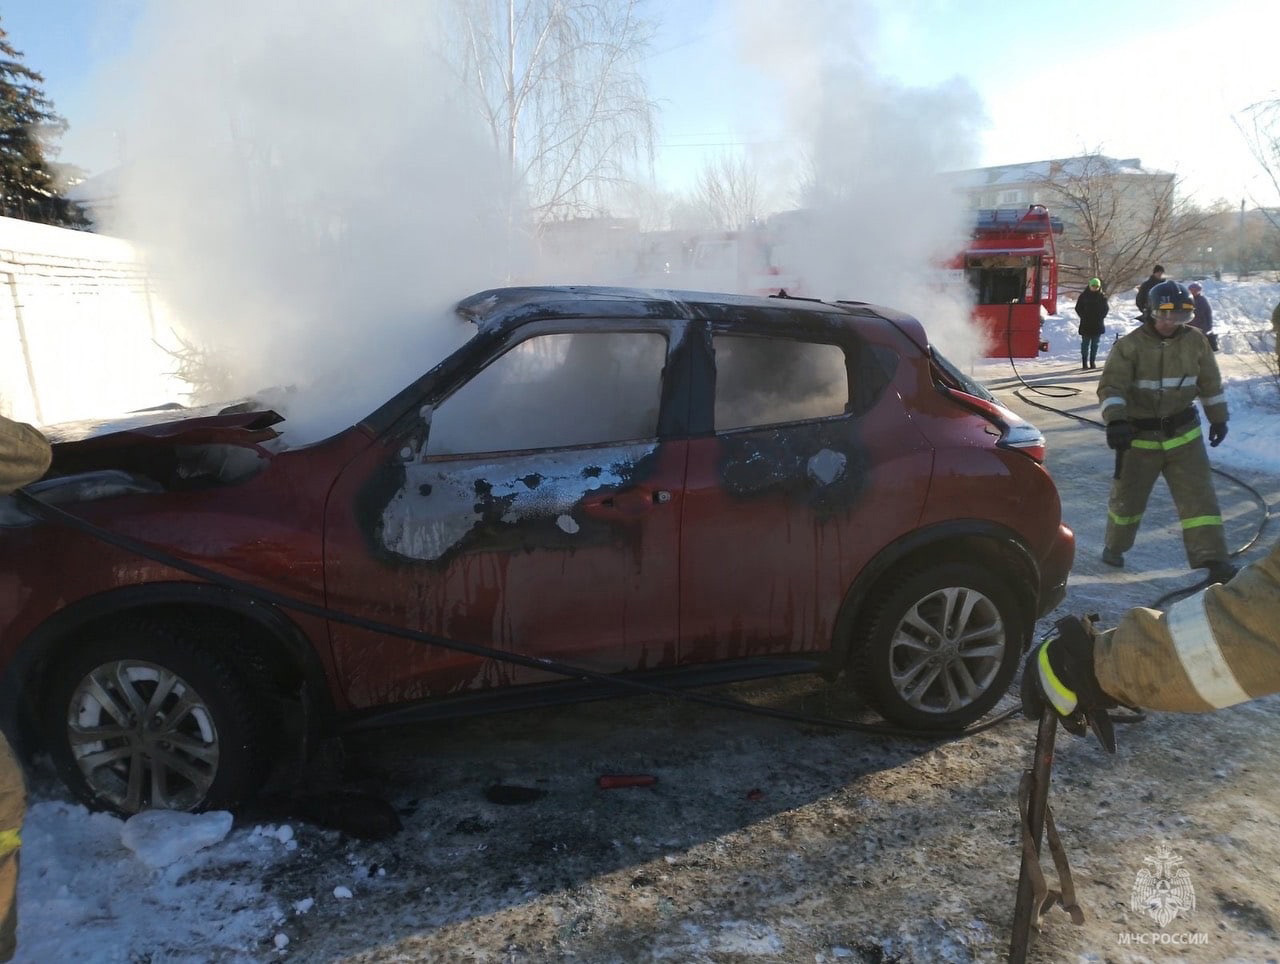 Возле храма в Челябинской области подожгли автомобиль